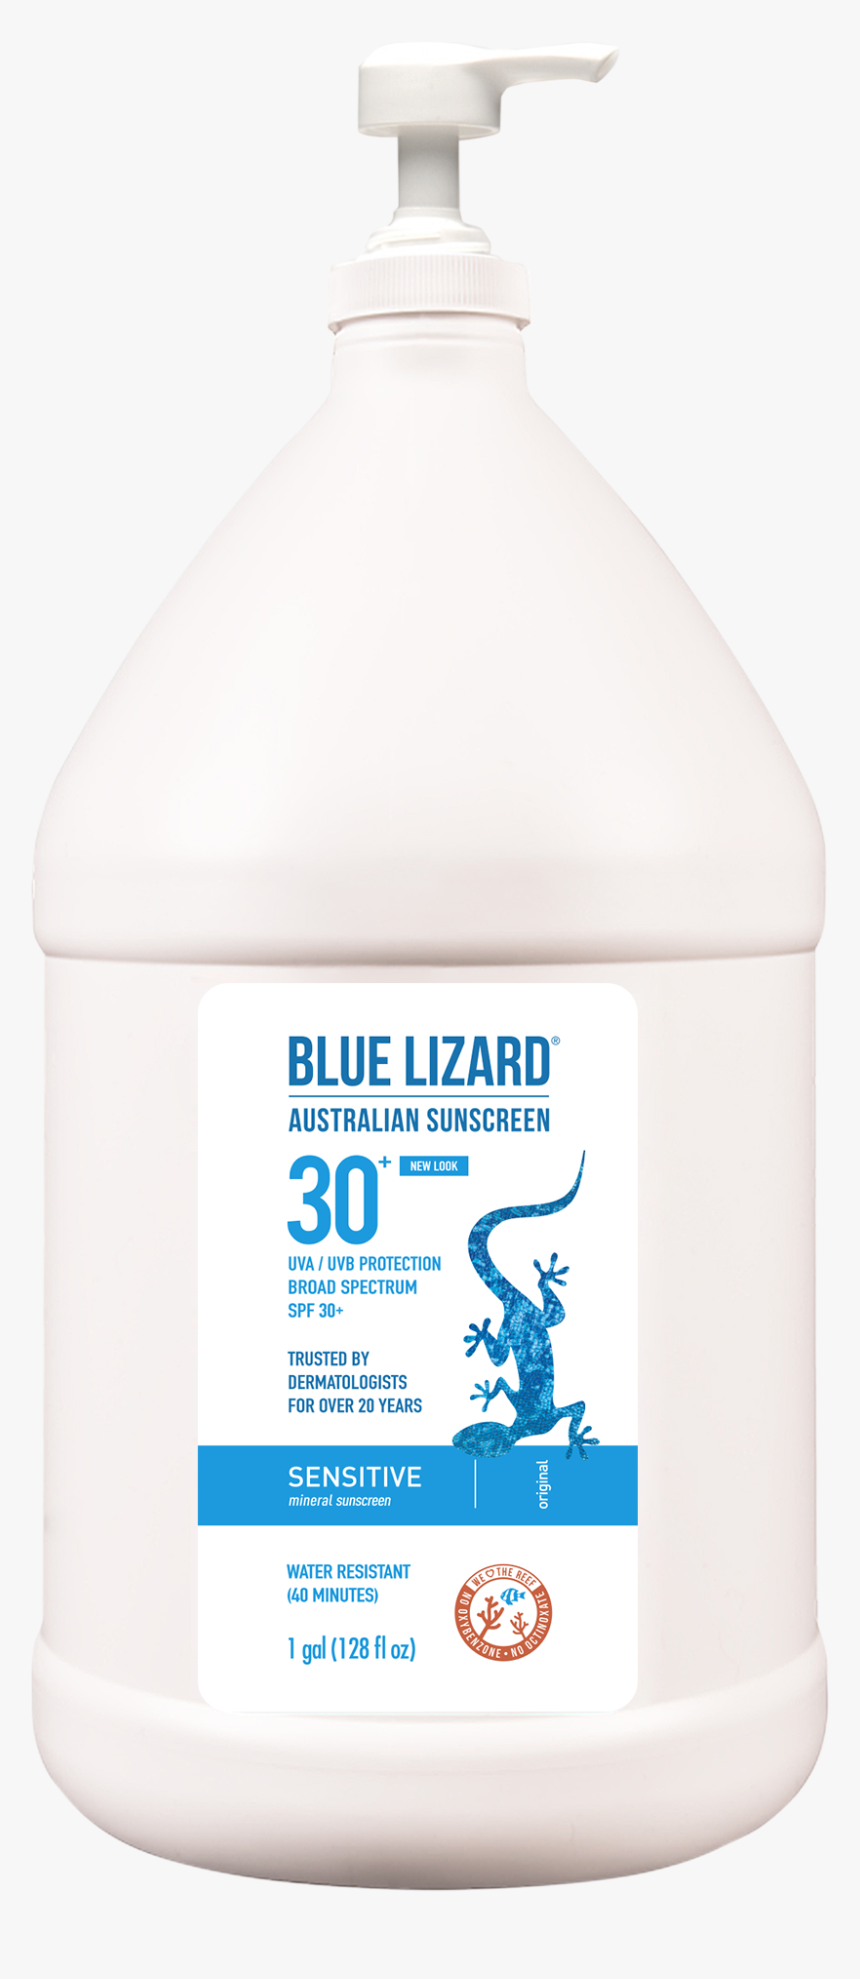 Blue Lizard Sunscreen Sensitive Gallon - Blue Lizard Sunscreen Gallon, HD Png Download, Free Download